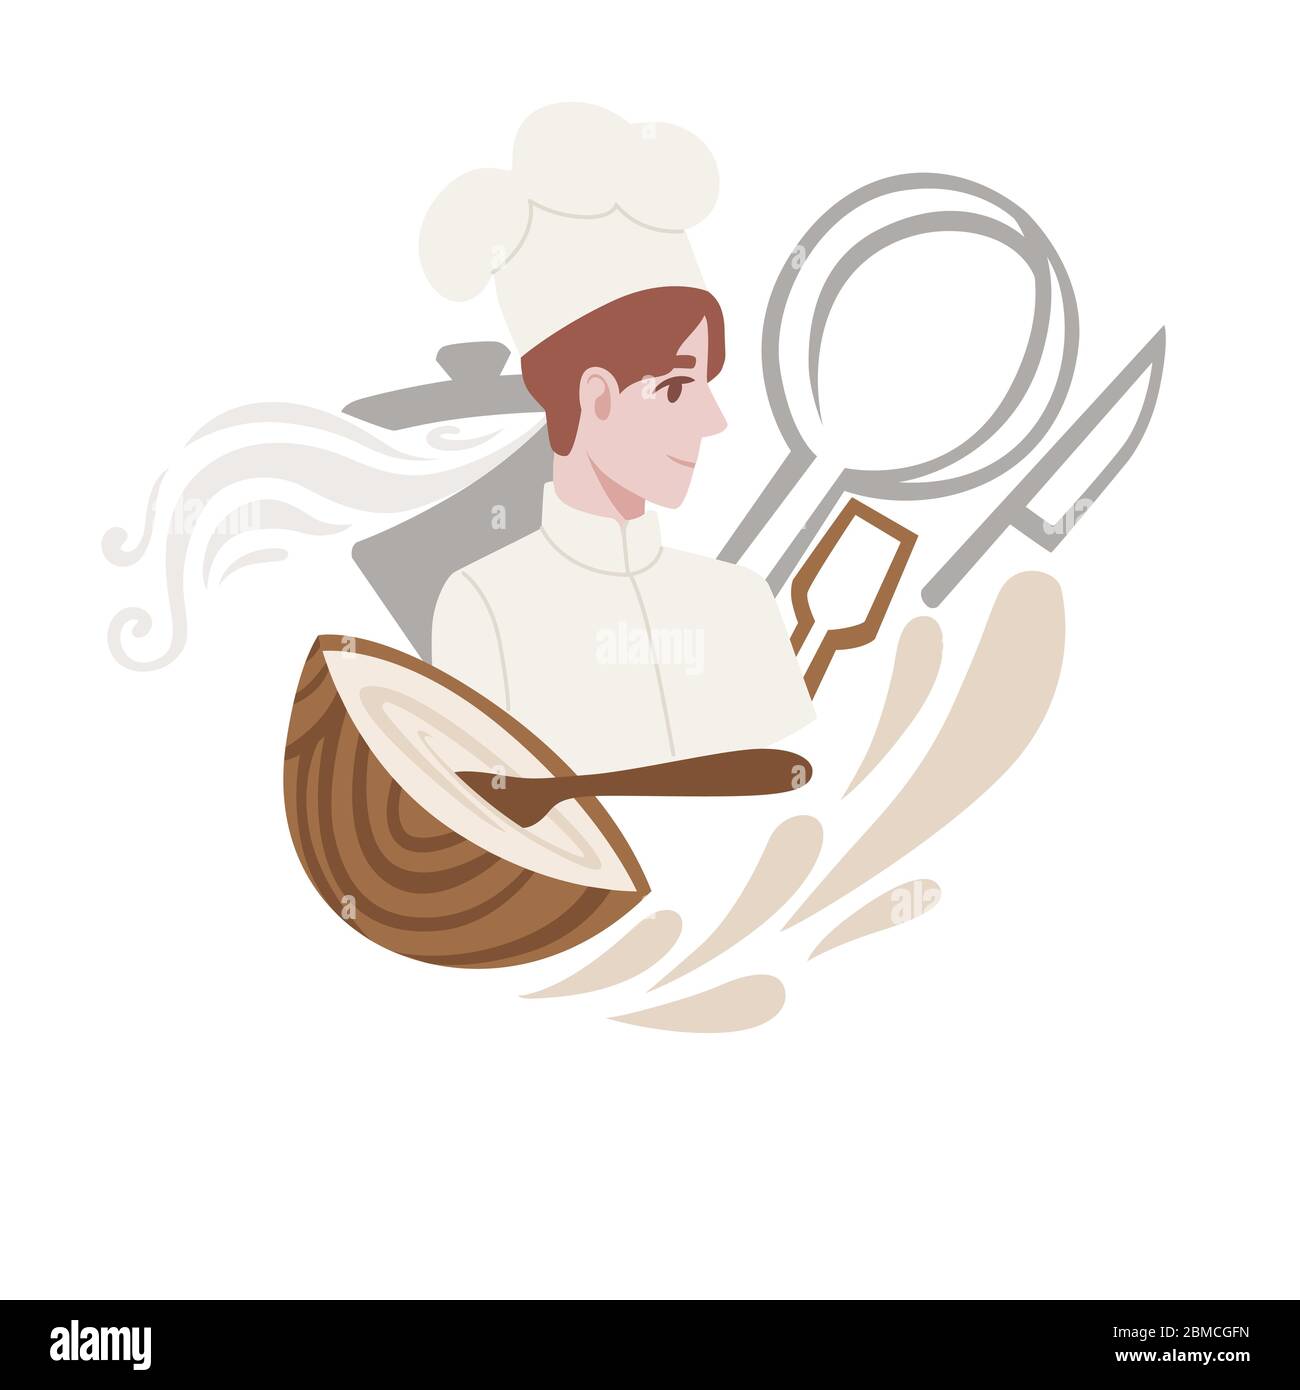 Jeune homme chef de boulangerie avec outils de cuisine dessin animé plat personnage dessin vectoriel illustration sur fond blanc Illustration de Vecteur